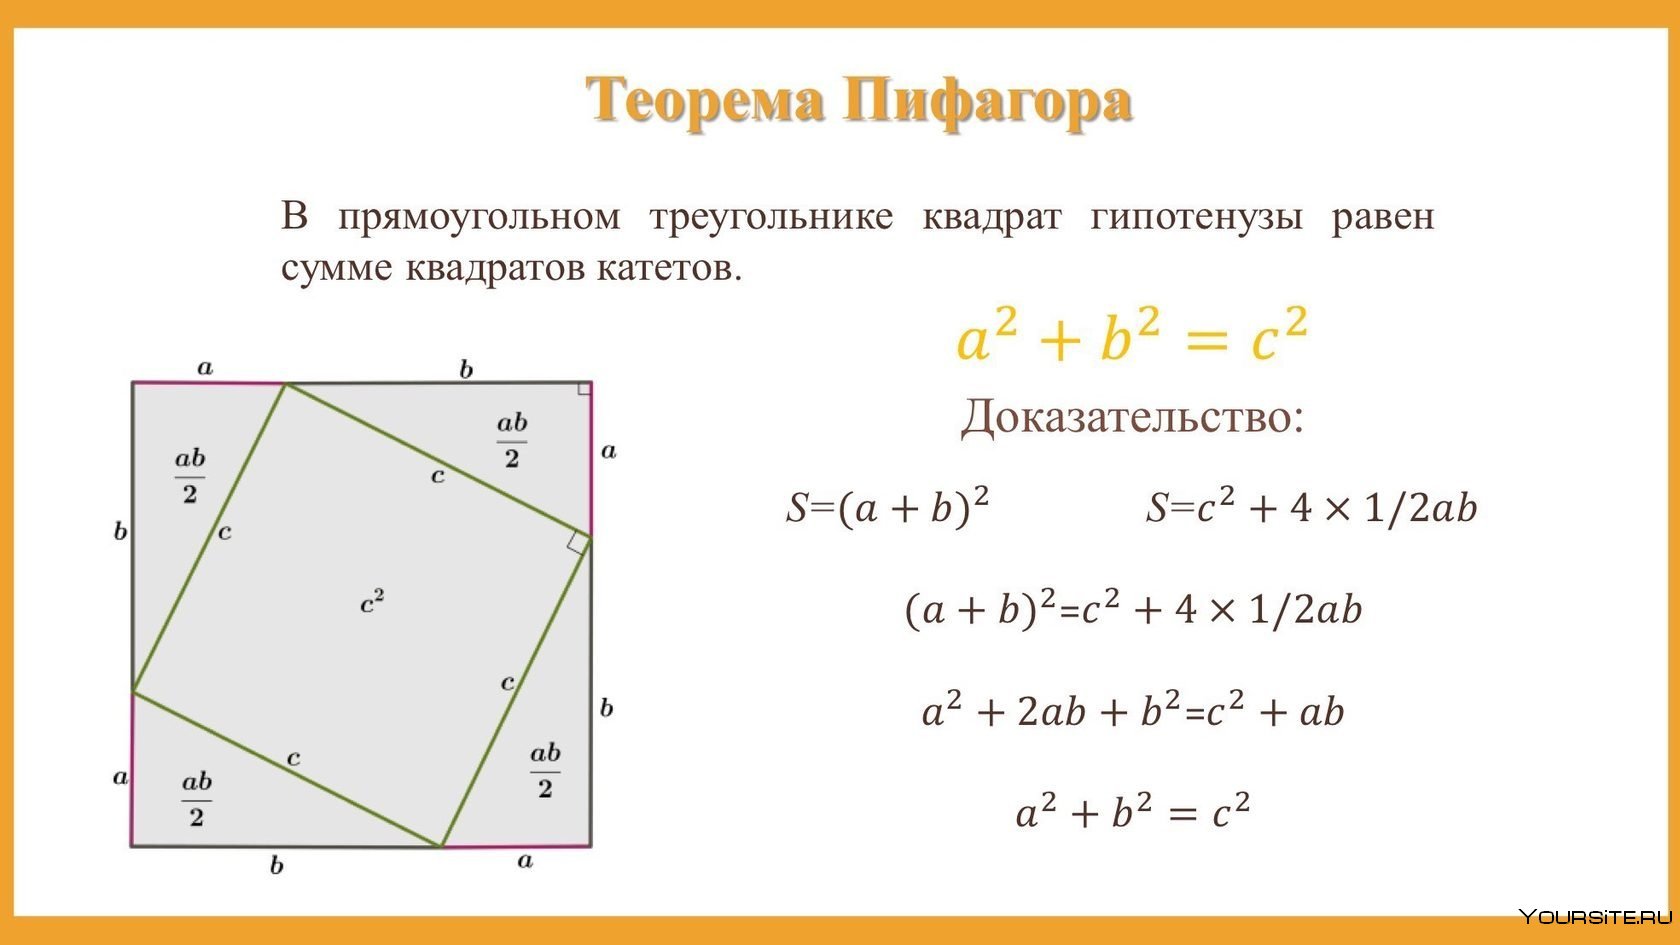 Геометрическое решение теоремы Пифагора